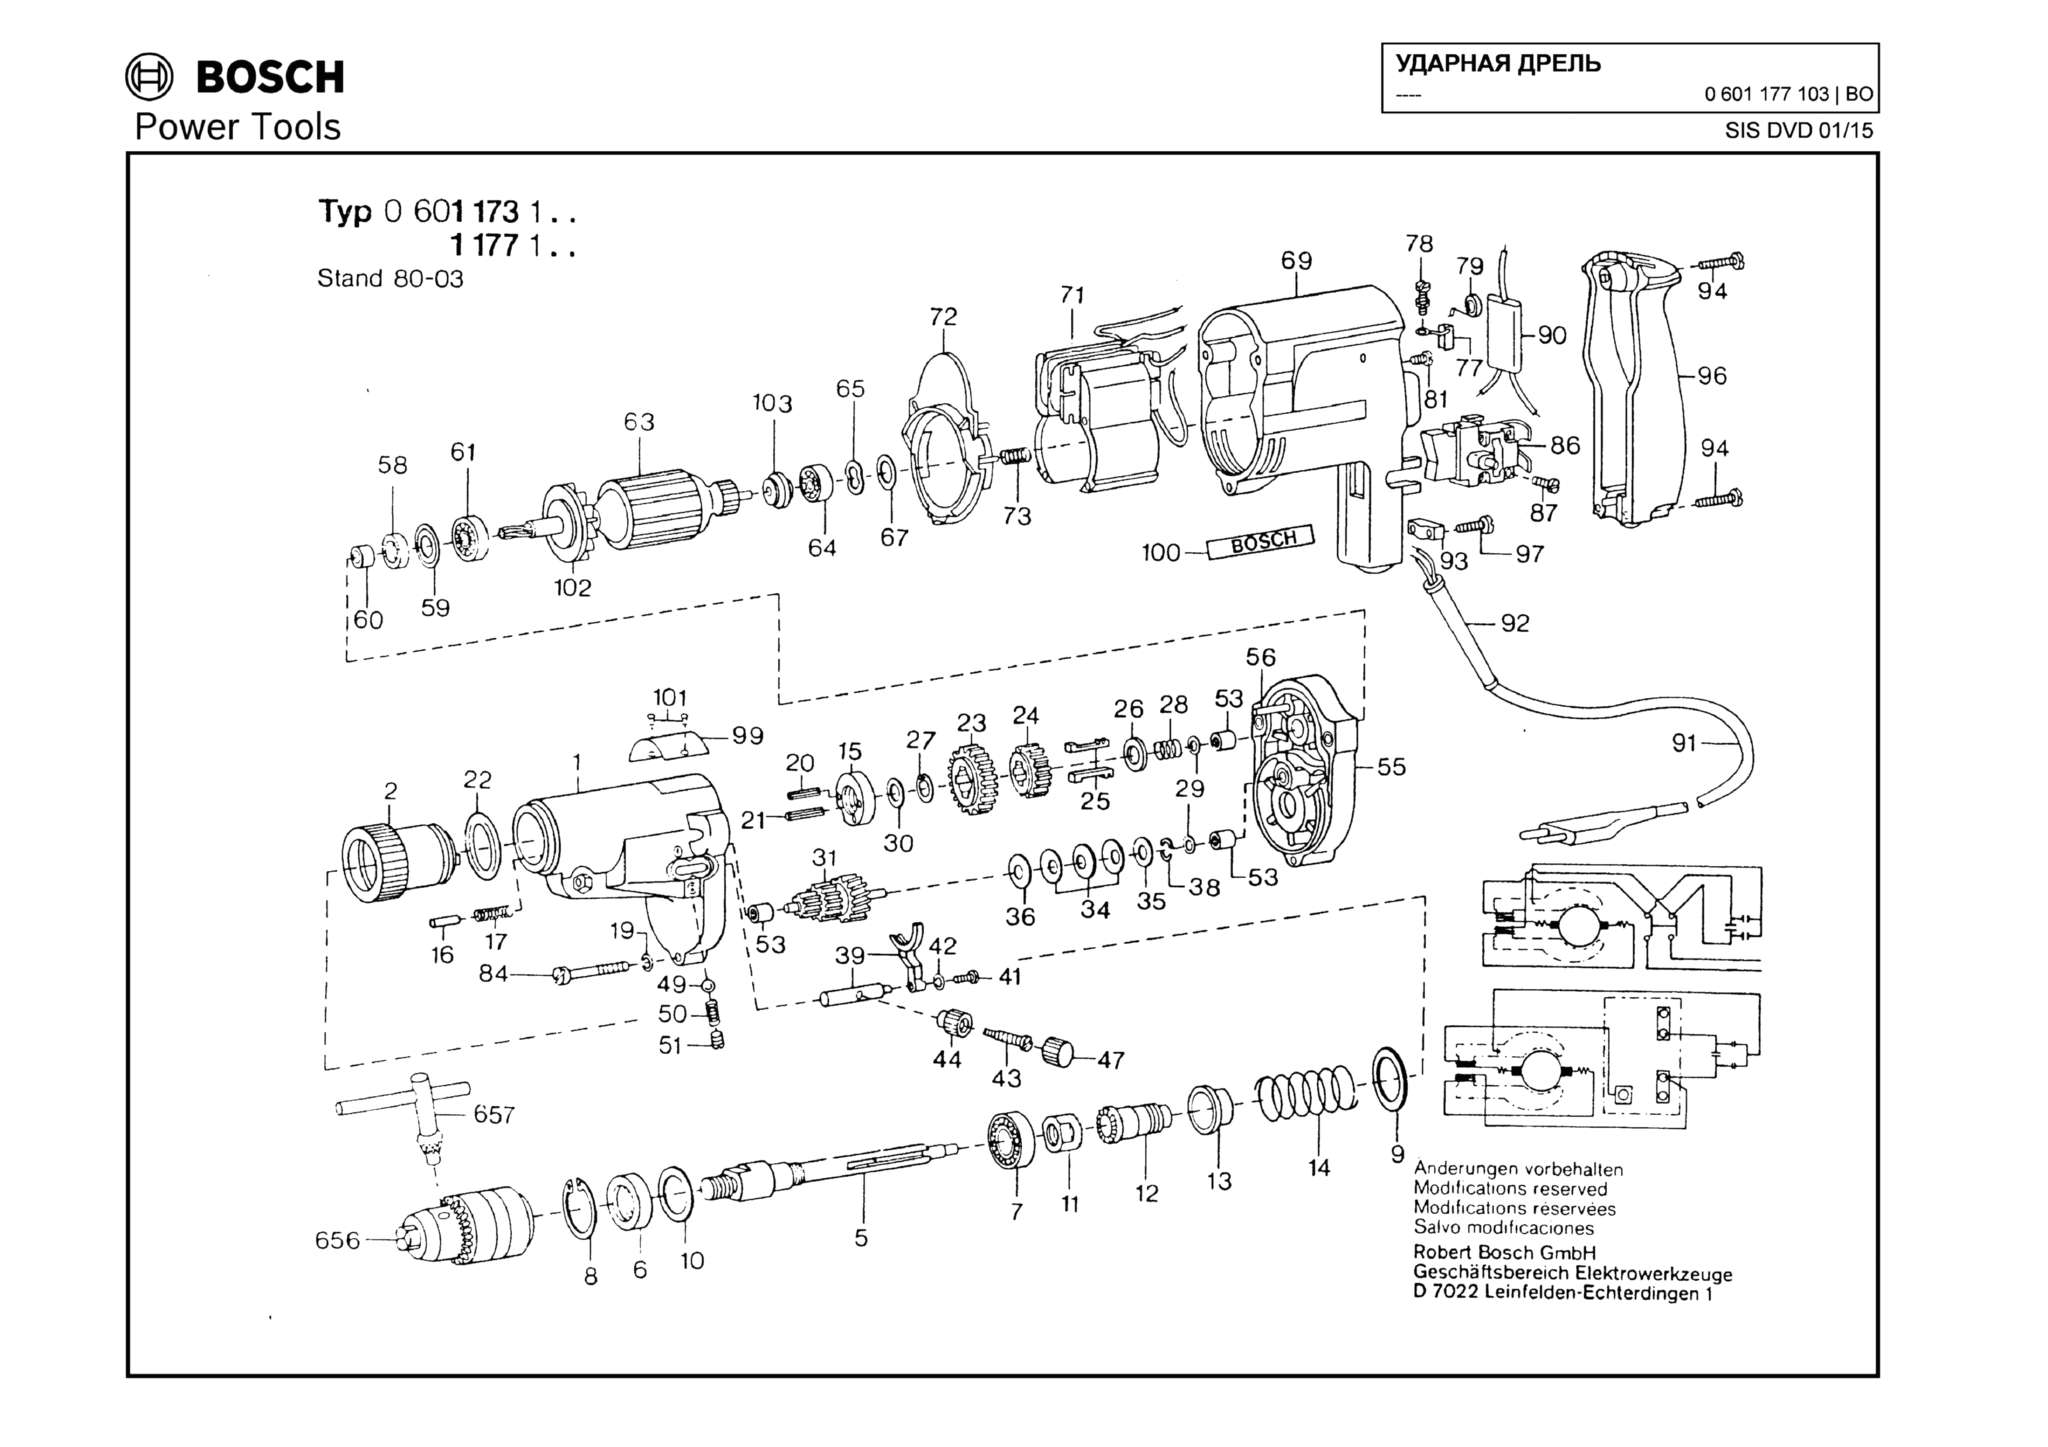 Запчасти, схема и деталировка Bosch (ТИП 0601177103)